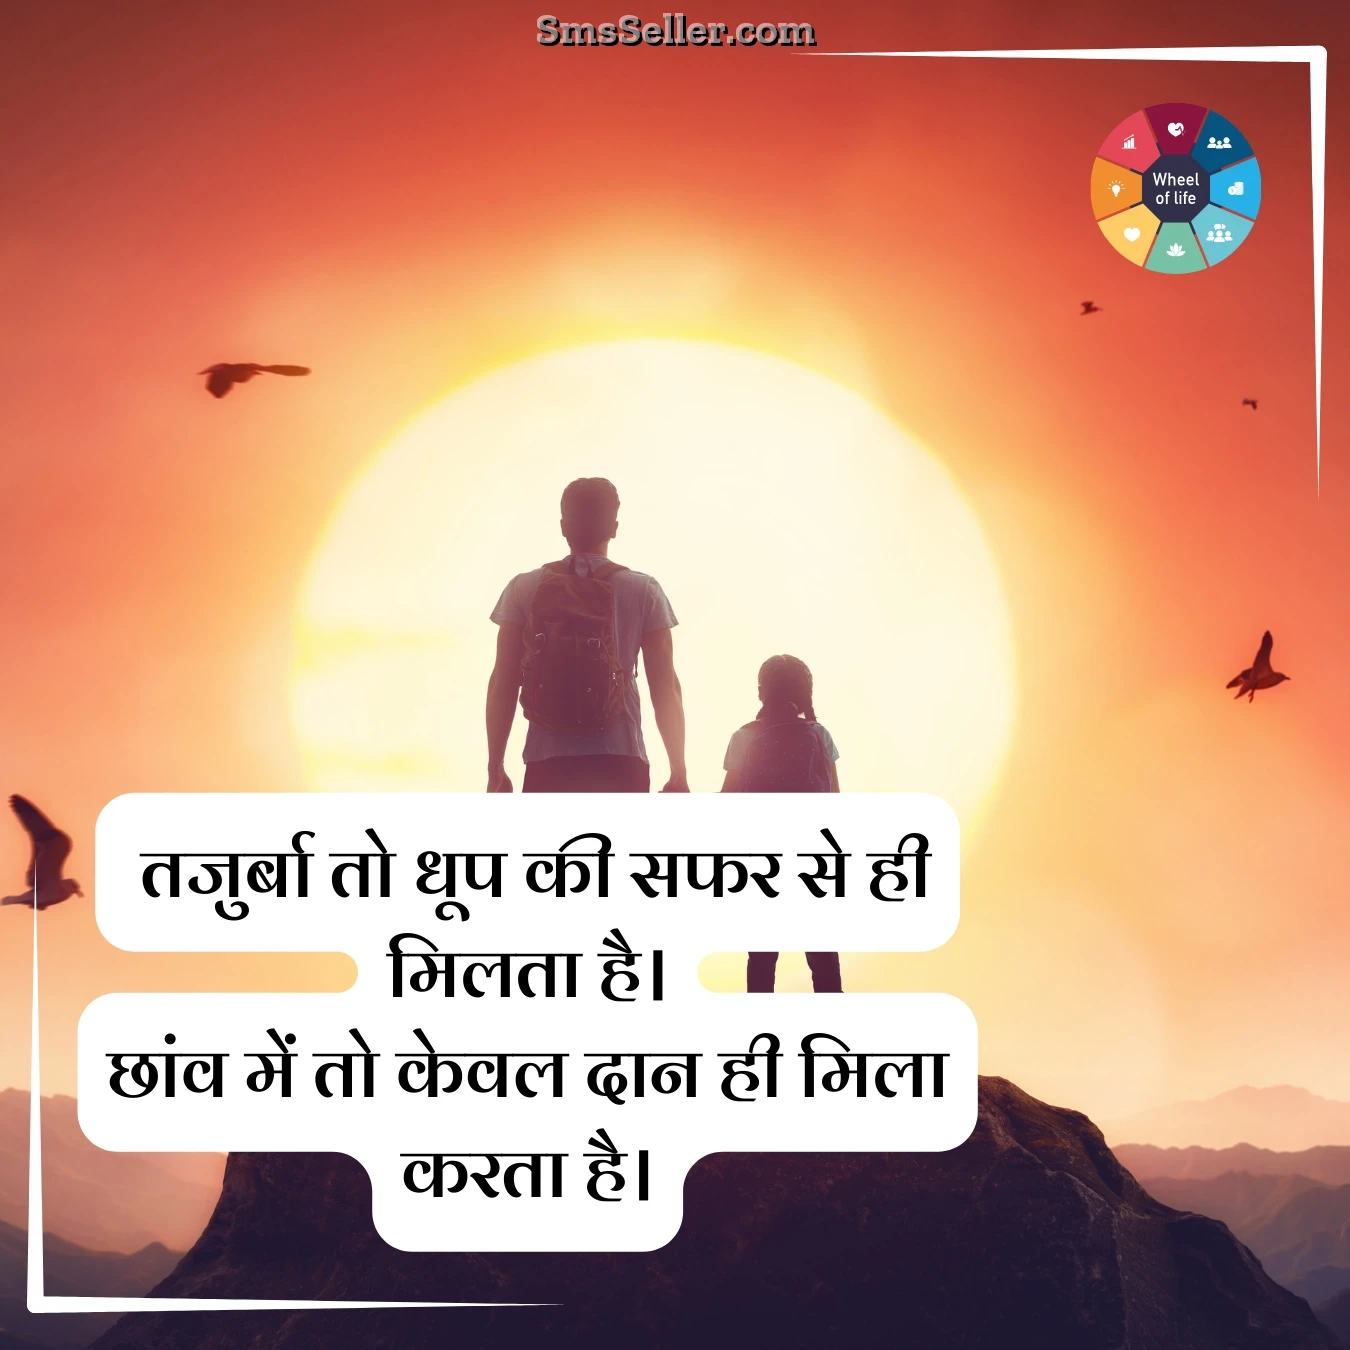 life quotes hindi ankaahi mohabbat tajurba